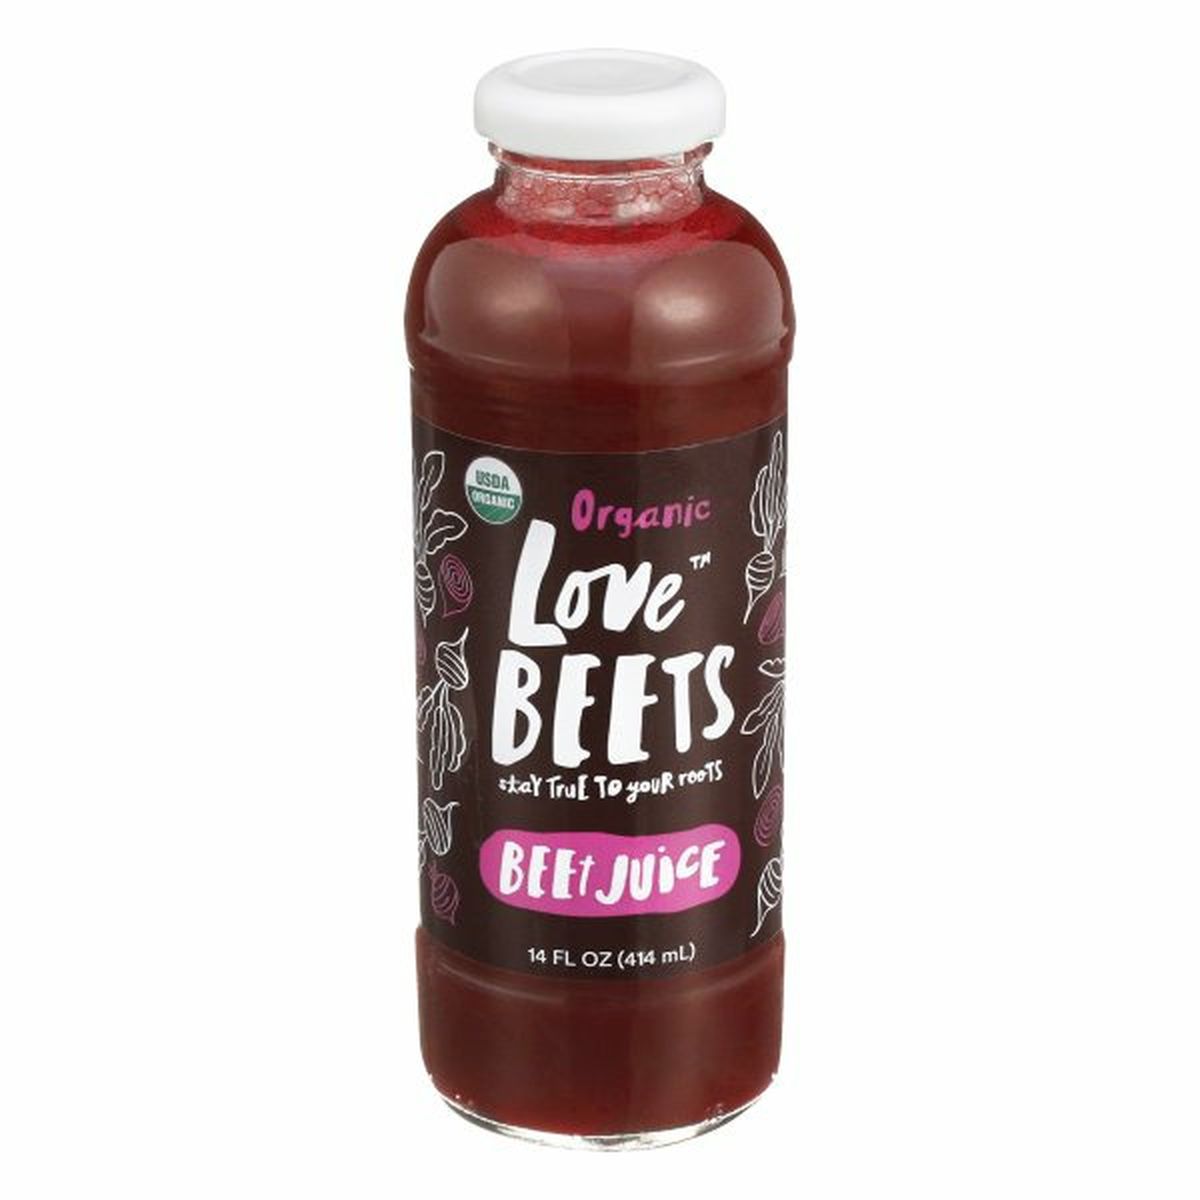 Calories in Love Beets Beet Juice, Organic